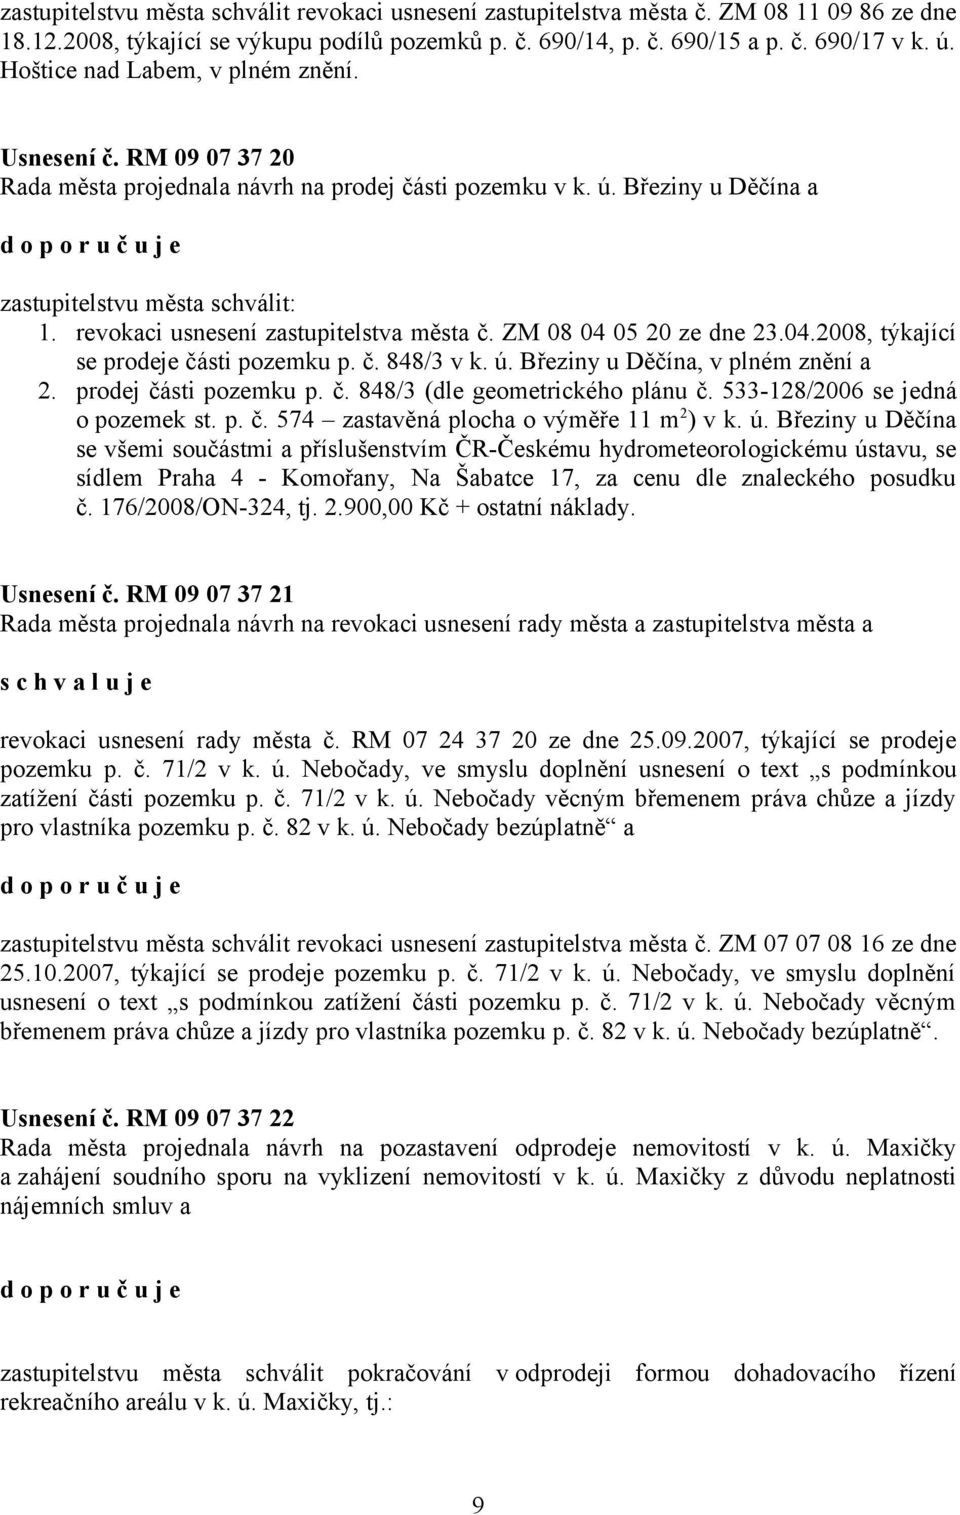 revokaci usnesení zastupitelstva města č. ZM 08 04 05 20 ze dne 23.04.2008, týkající se prodeje části pozemku p. č. 848/3 v k. ú. Březiny u Děčína, v plném znění a 2. prodej části pozemku p. č. 848/3 (dle geometrického plánu č.